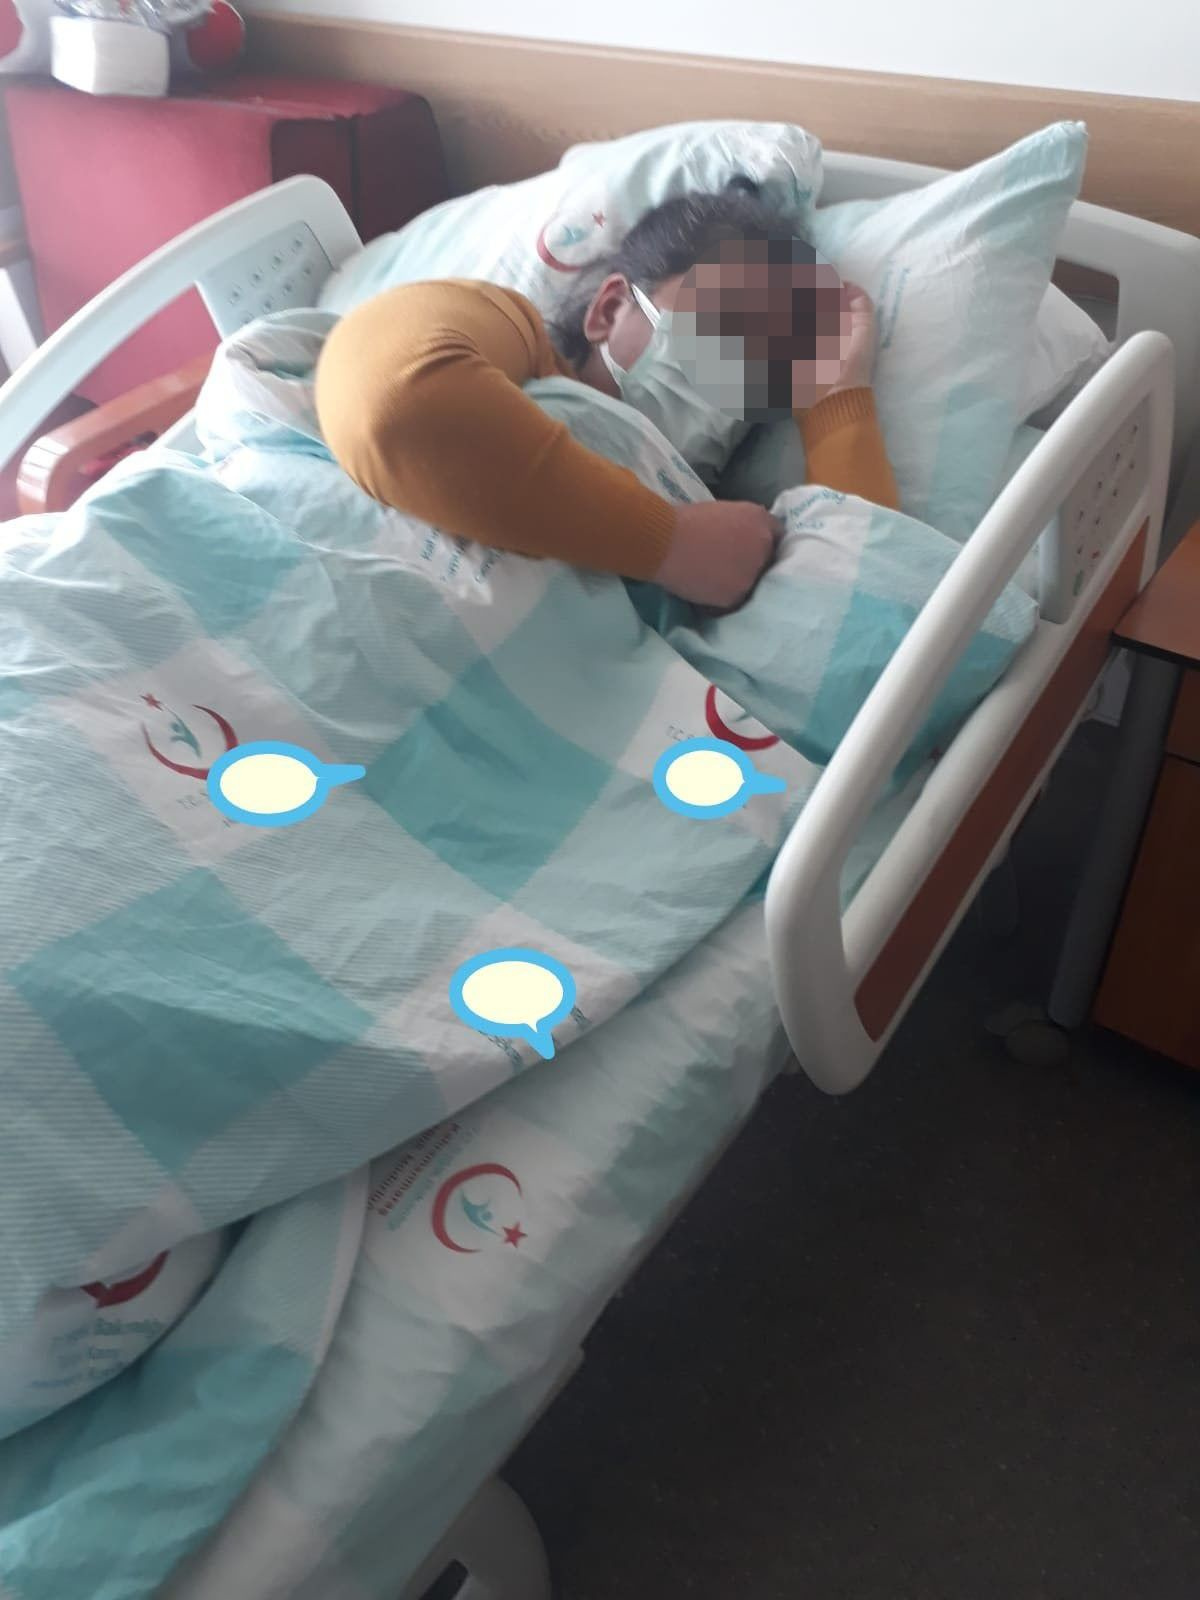 Kahramanmaraş'ta kadının yardım çığlığı: Öldüreceğim diye paylaşmış